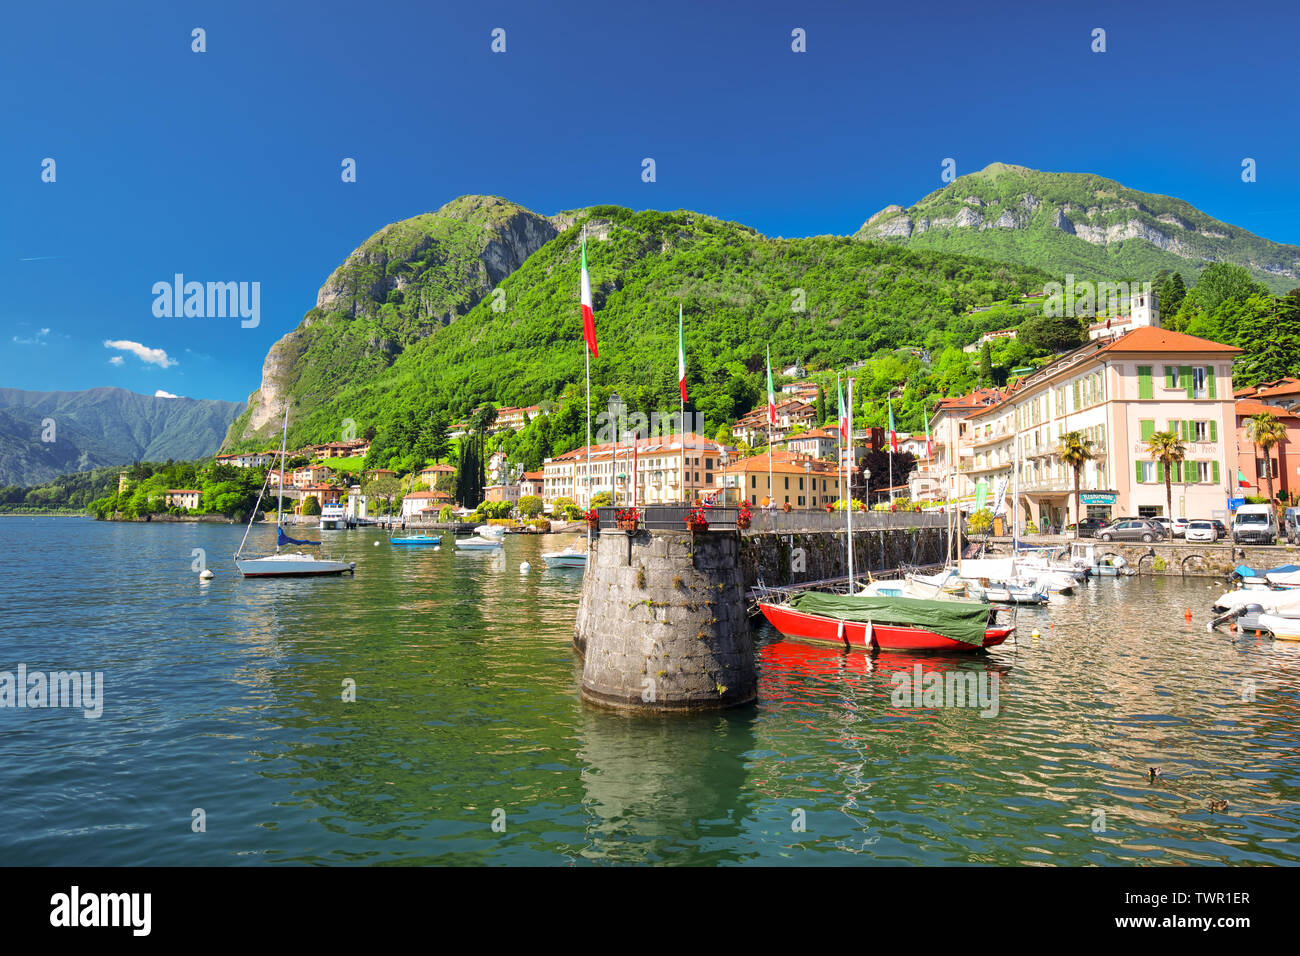 Vieille ville de Menaggio sur le lac de Côme avec les montagnes en arrière-plan, Lombardie, Italie, Europe. Banque D'Images